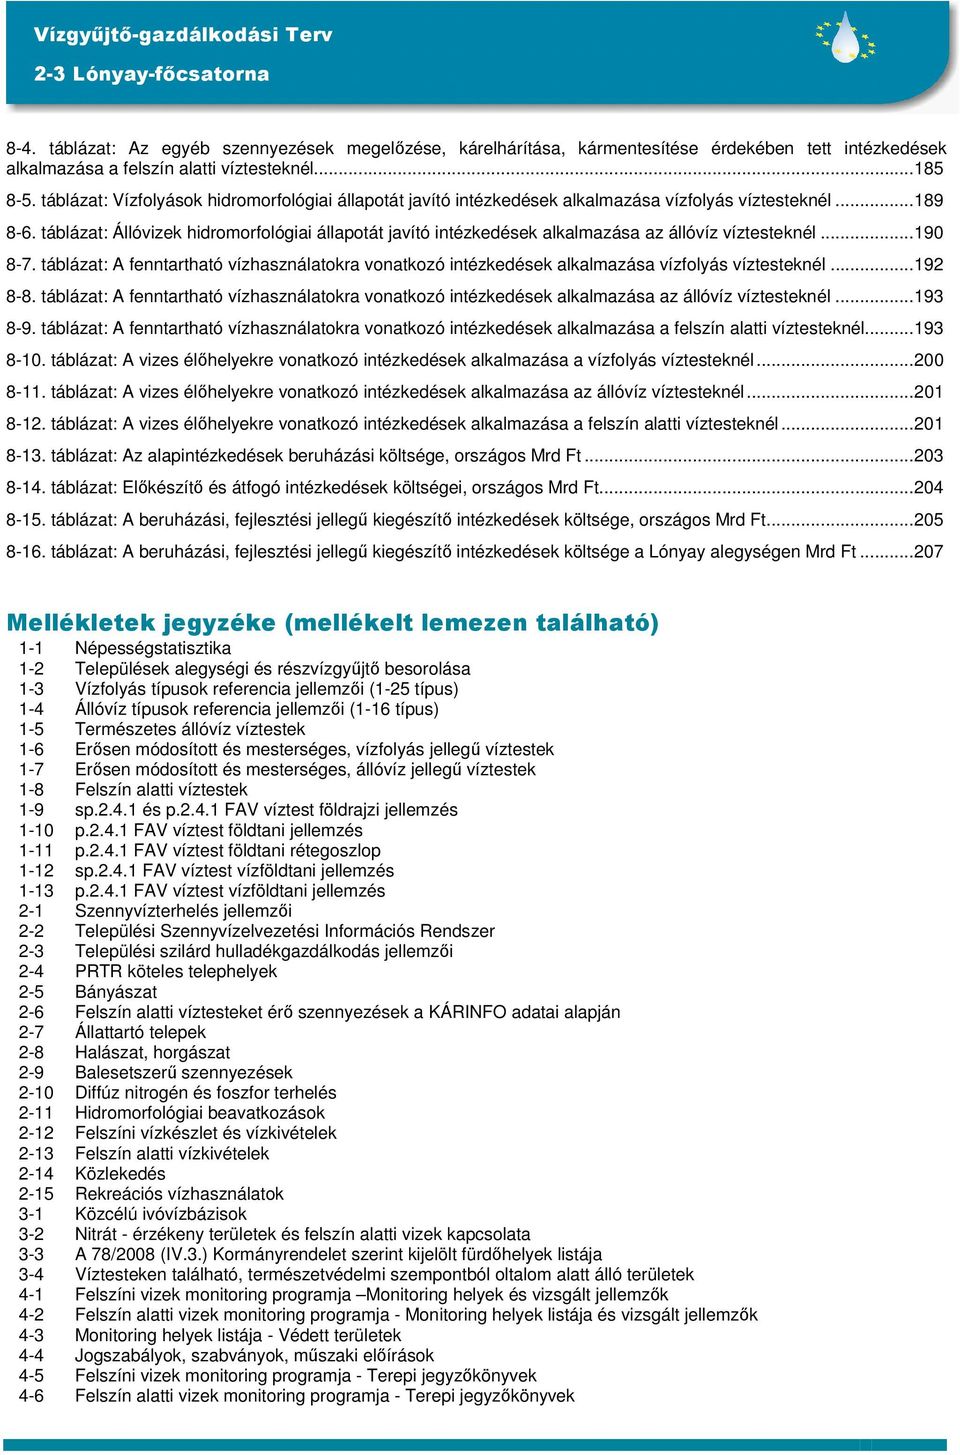 táblázat: Állóvizek hidromorfológiai állapotát javító intézkedések alkalmazása az állóvíz víztesteknél...190 8-7.